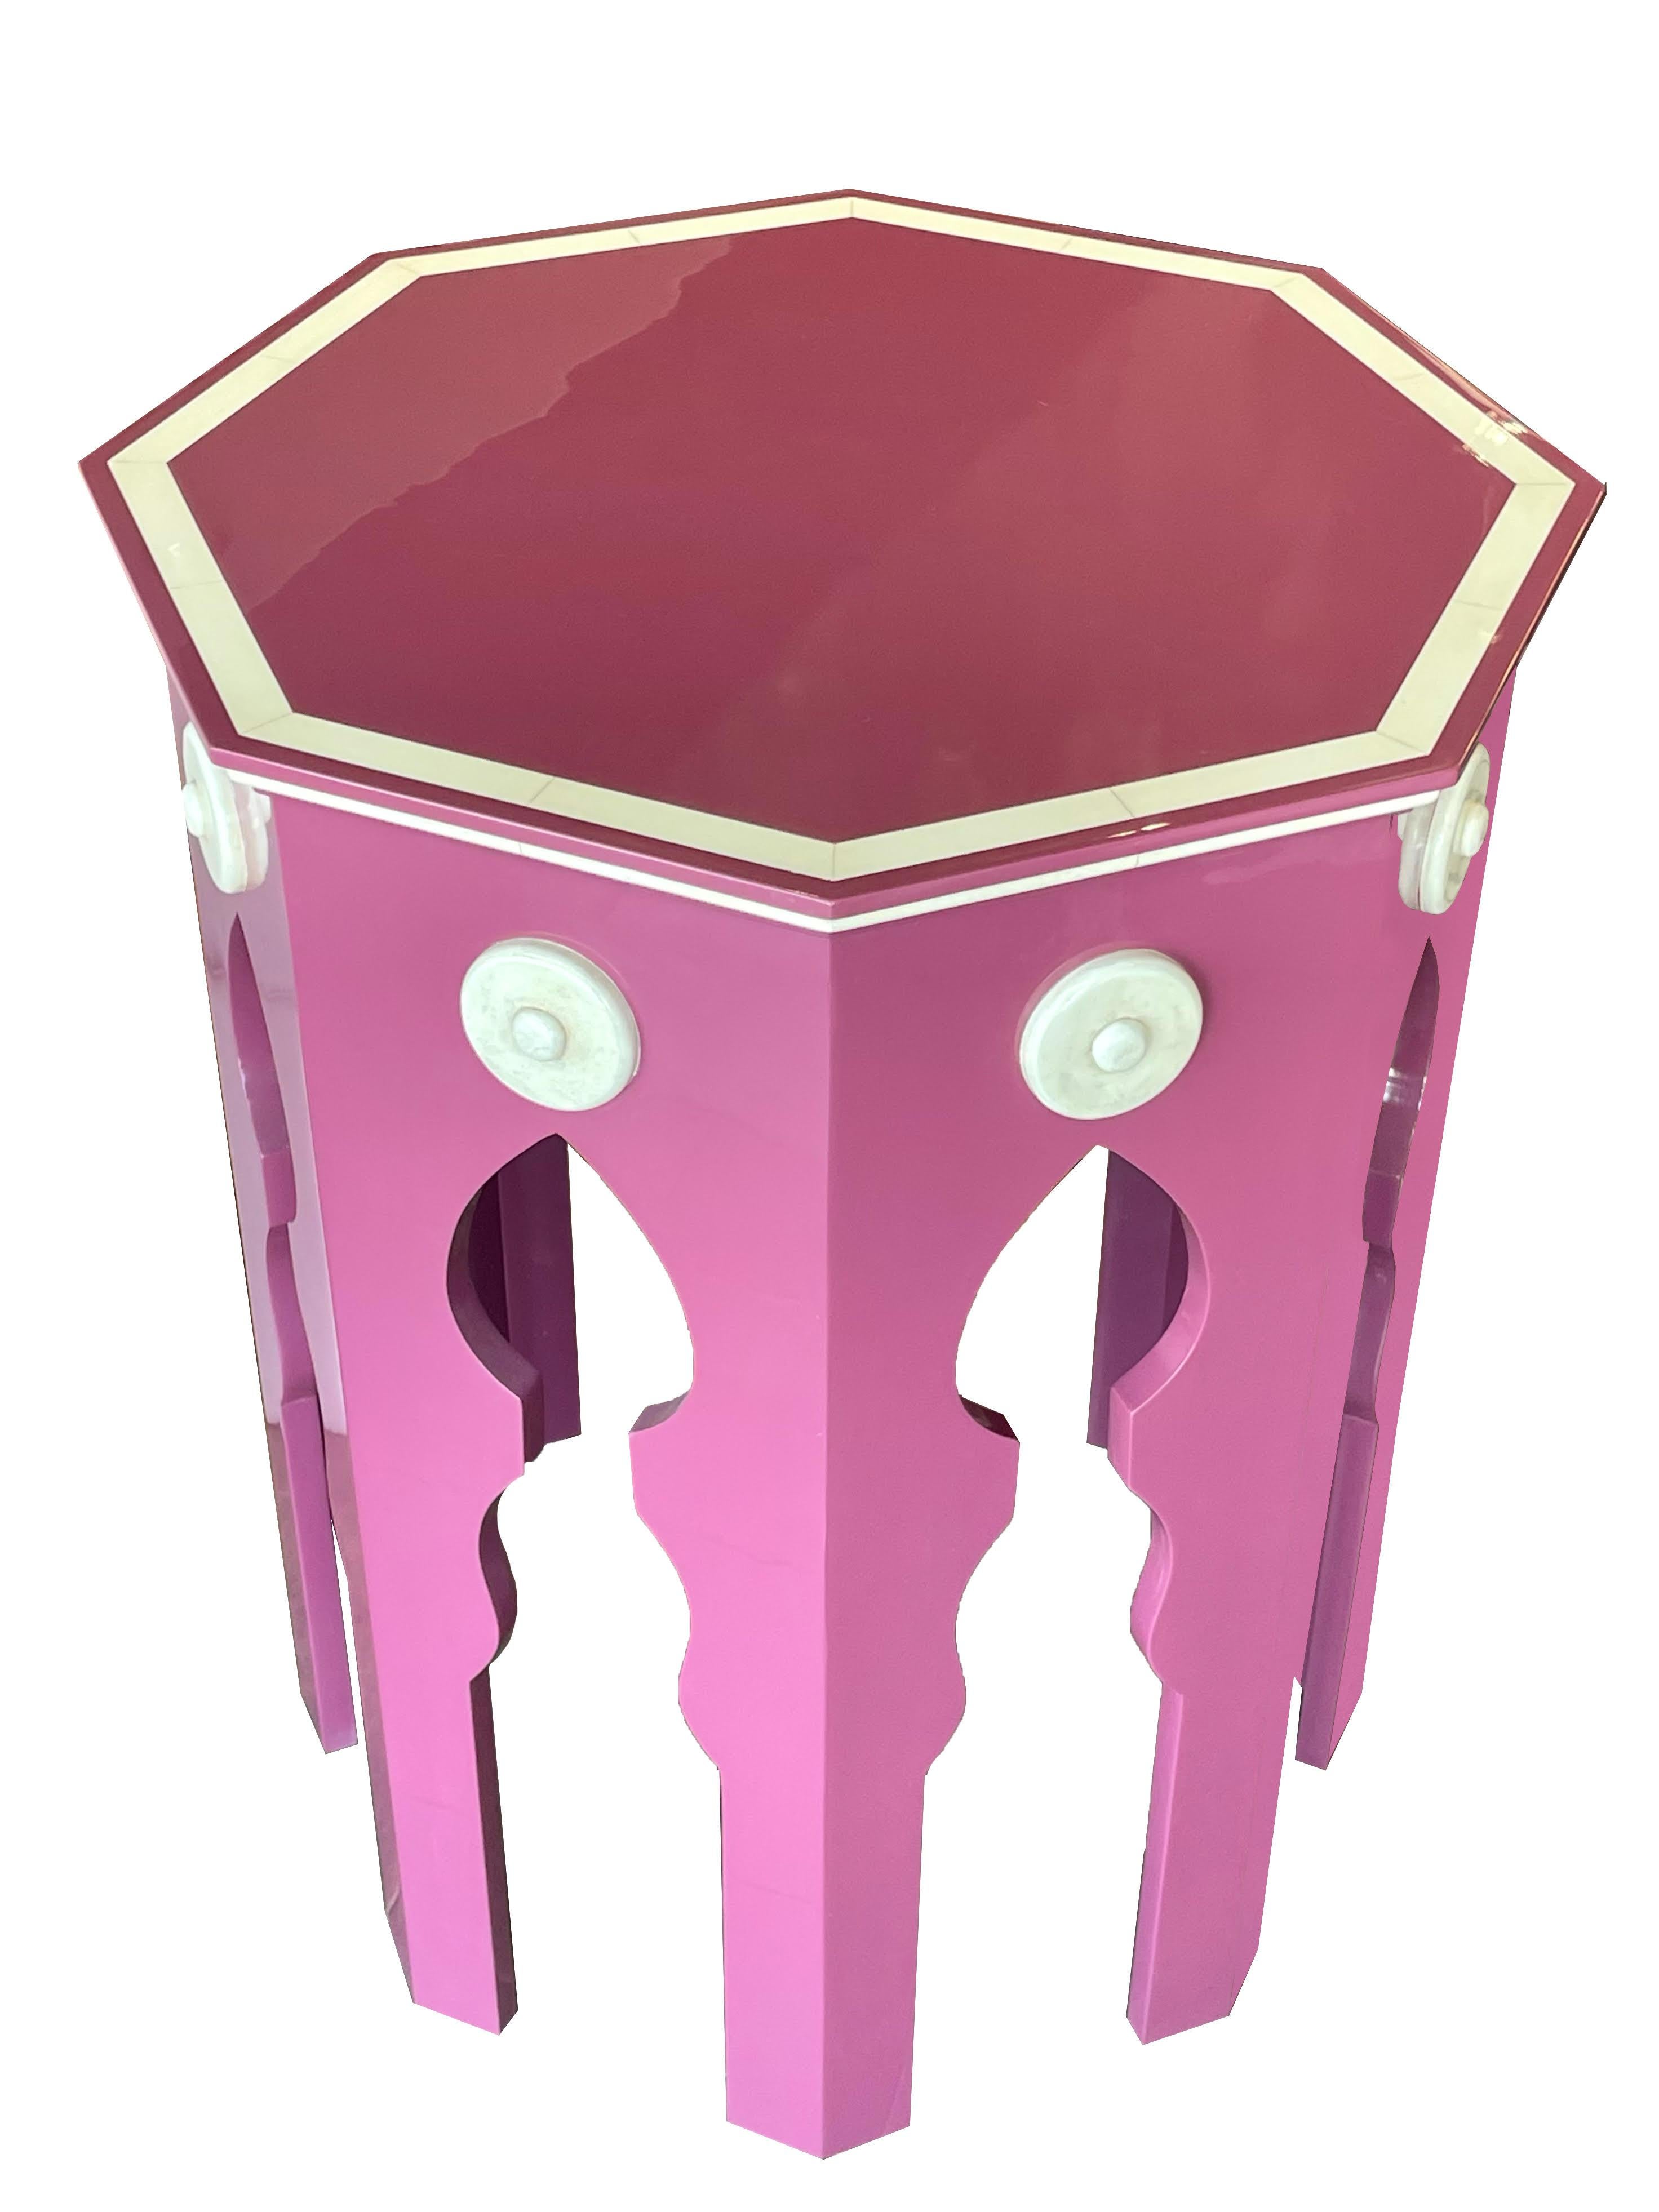 MLB Table d'appoint laquée rose, créée sur mesure par Martyn Lawrence Bullard
Inspiré par la silhouette de la table à thé marocaine.




